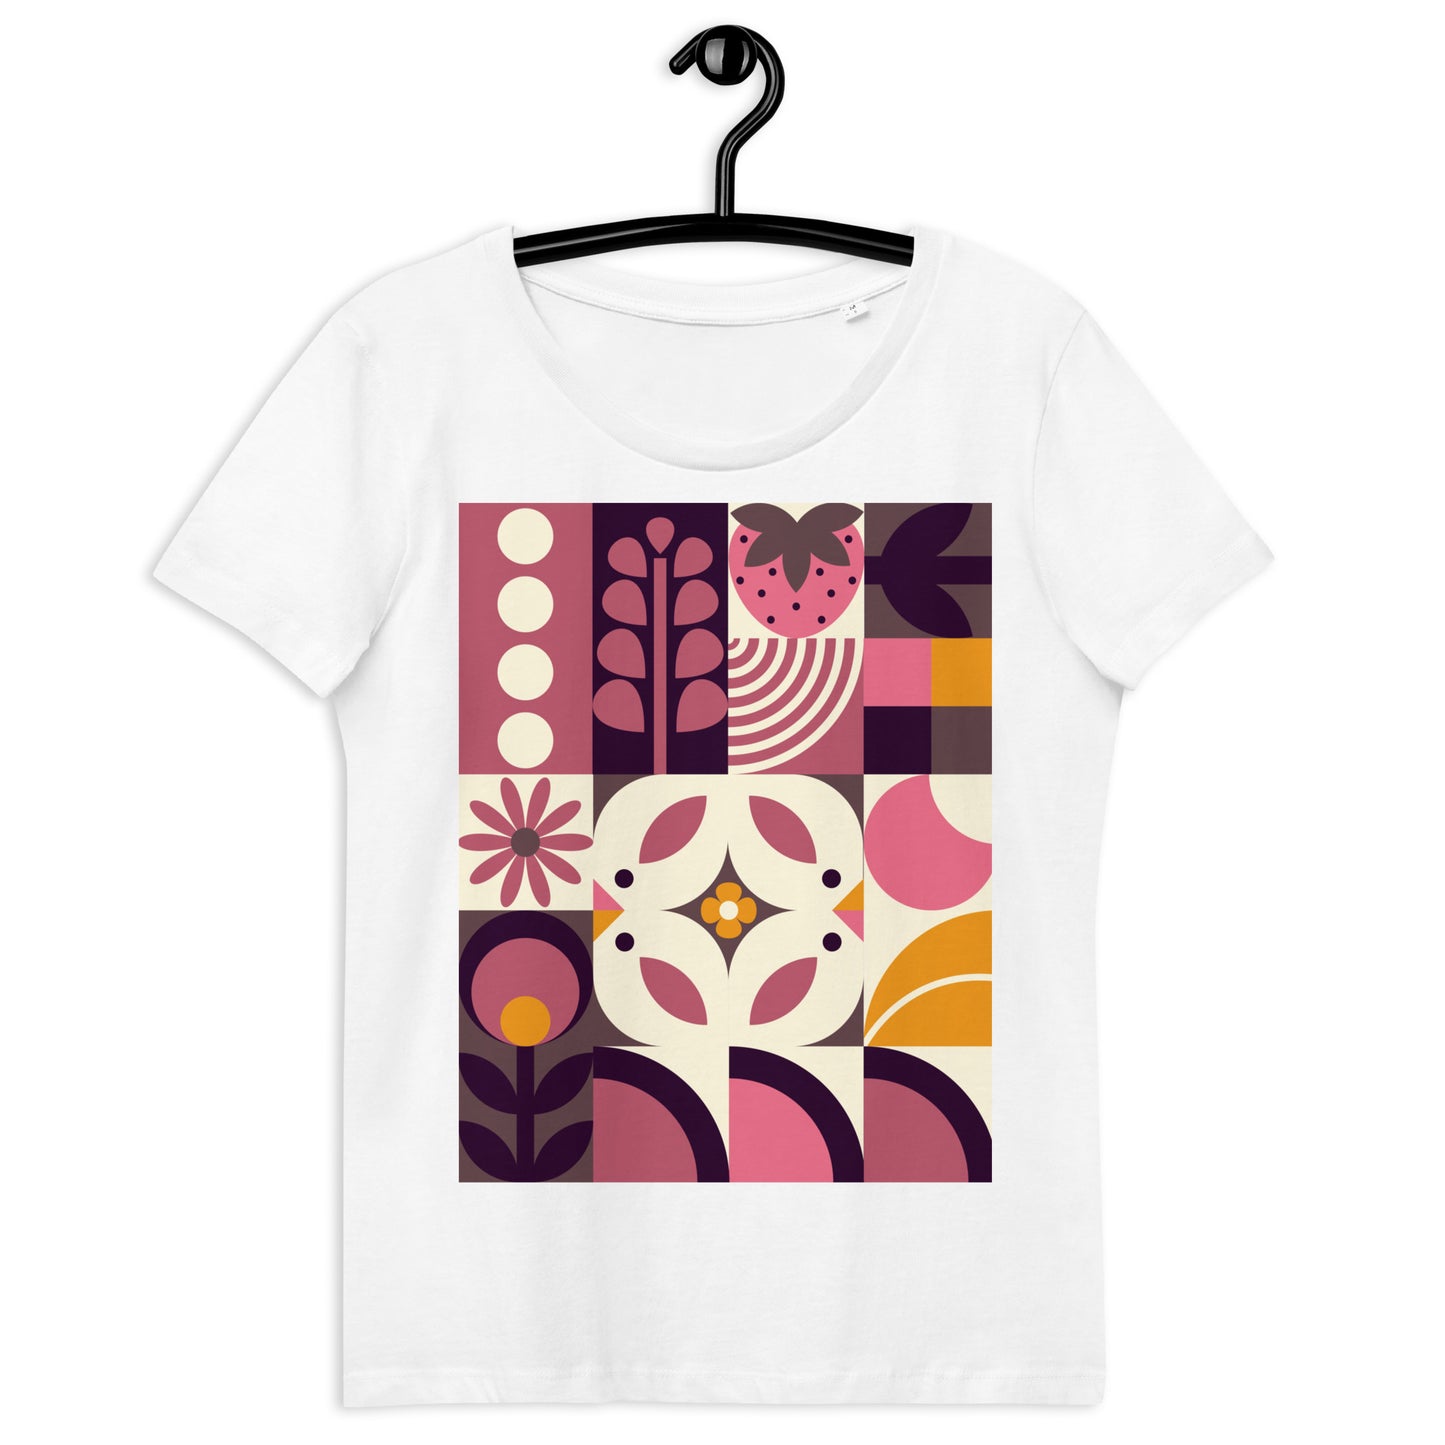 T-shirt "Spring birds bauhaus" - cotone organico - Donna